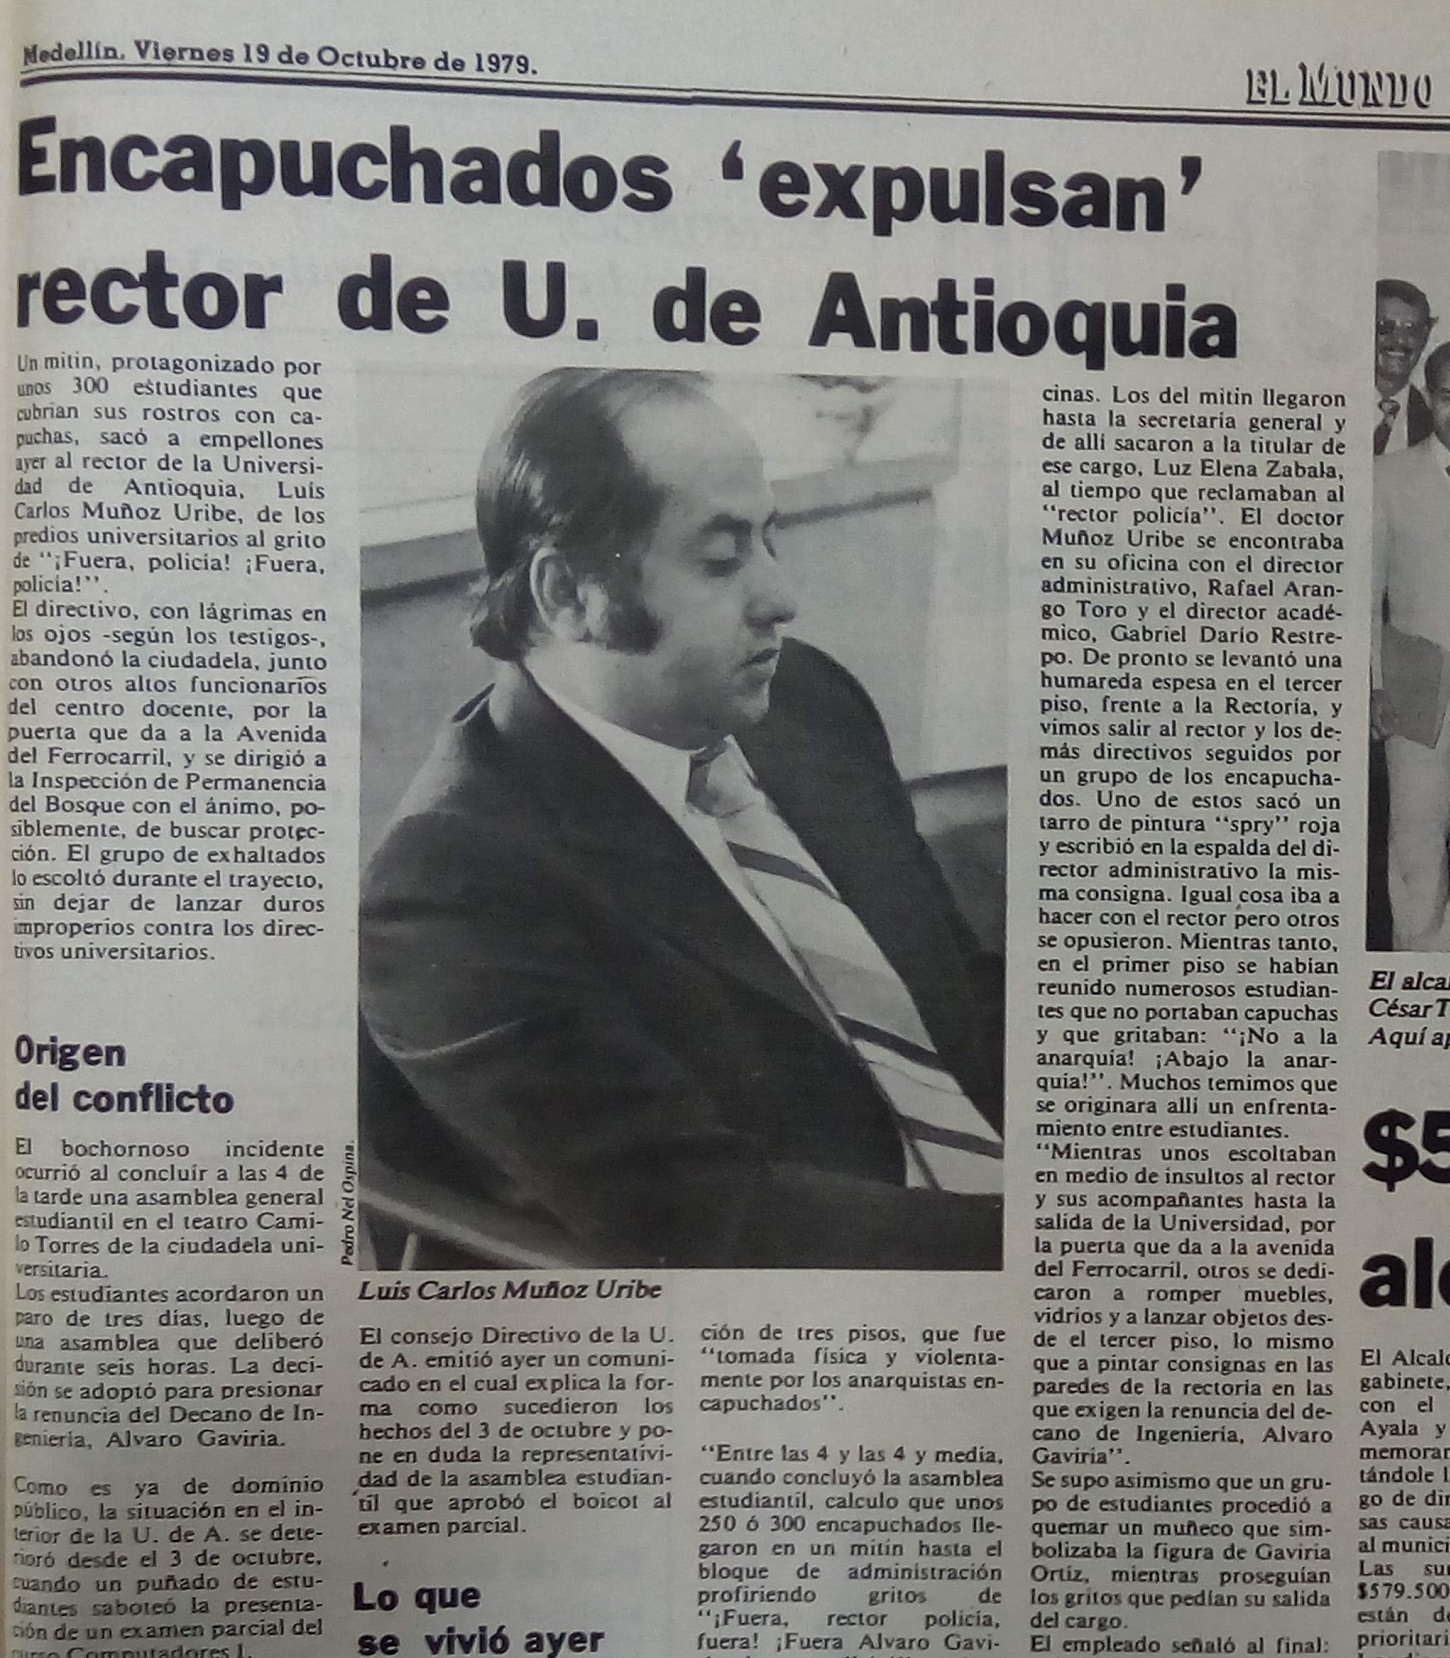 Fotografía tomada de la edición del 19 de octubre de 1979 del periódico El Mundo.